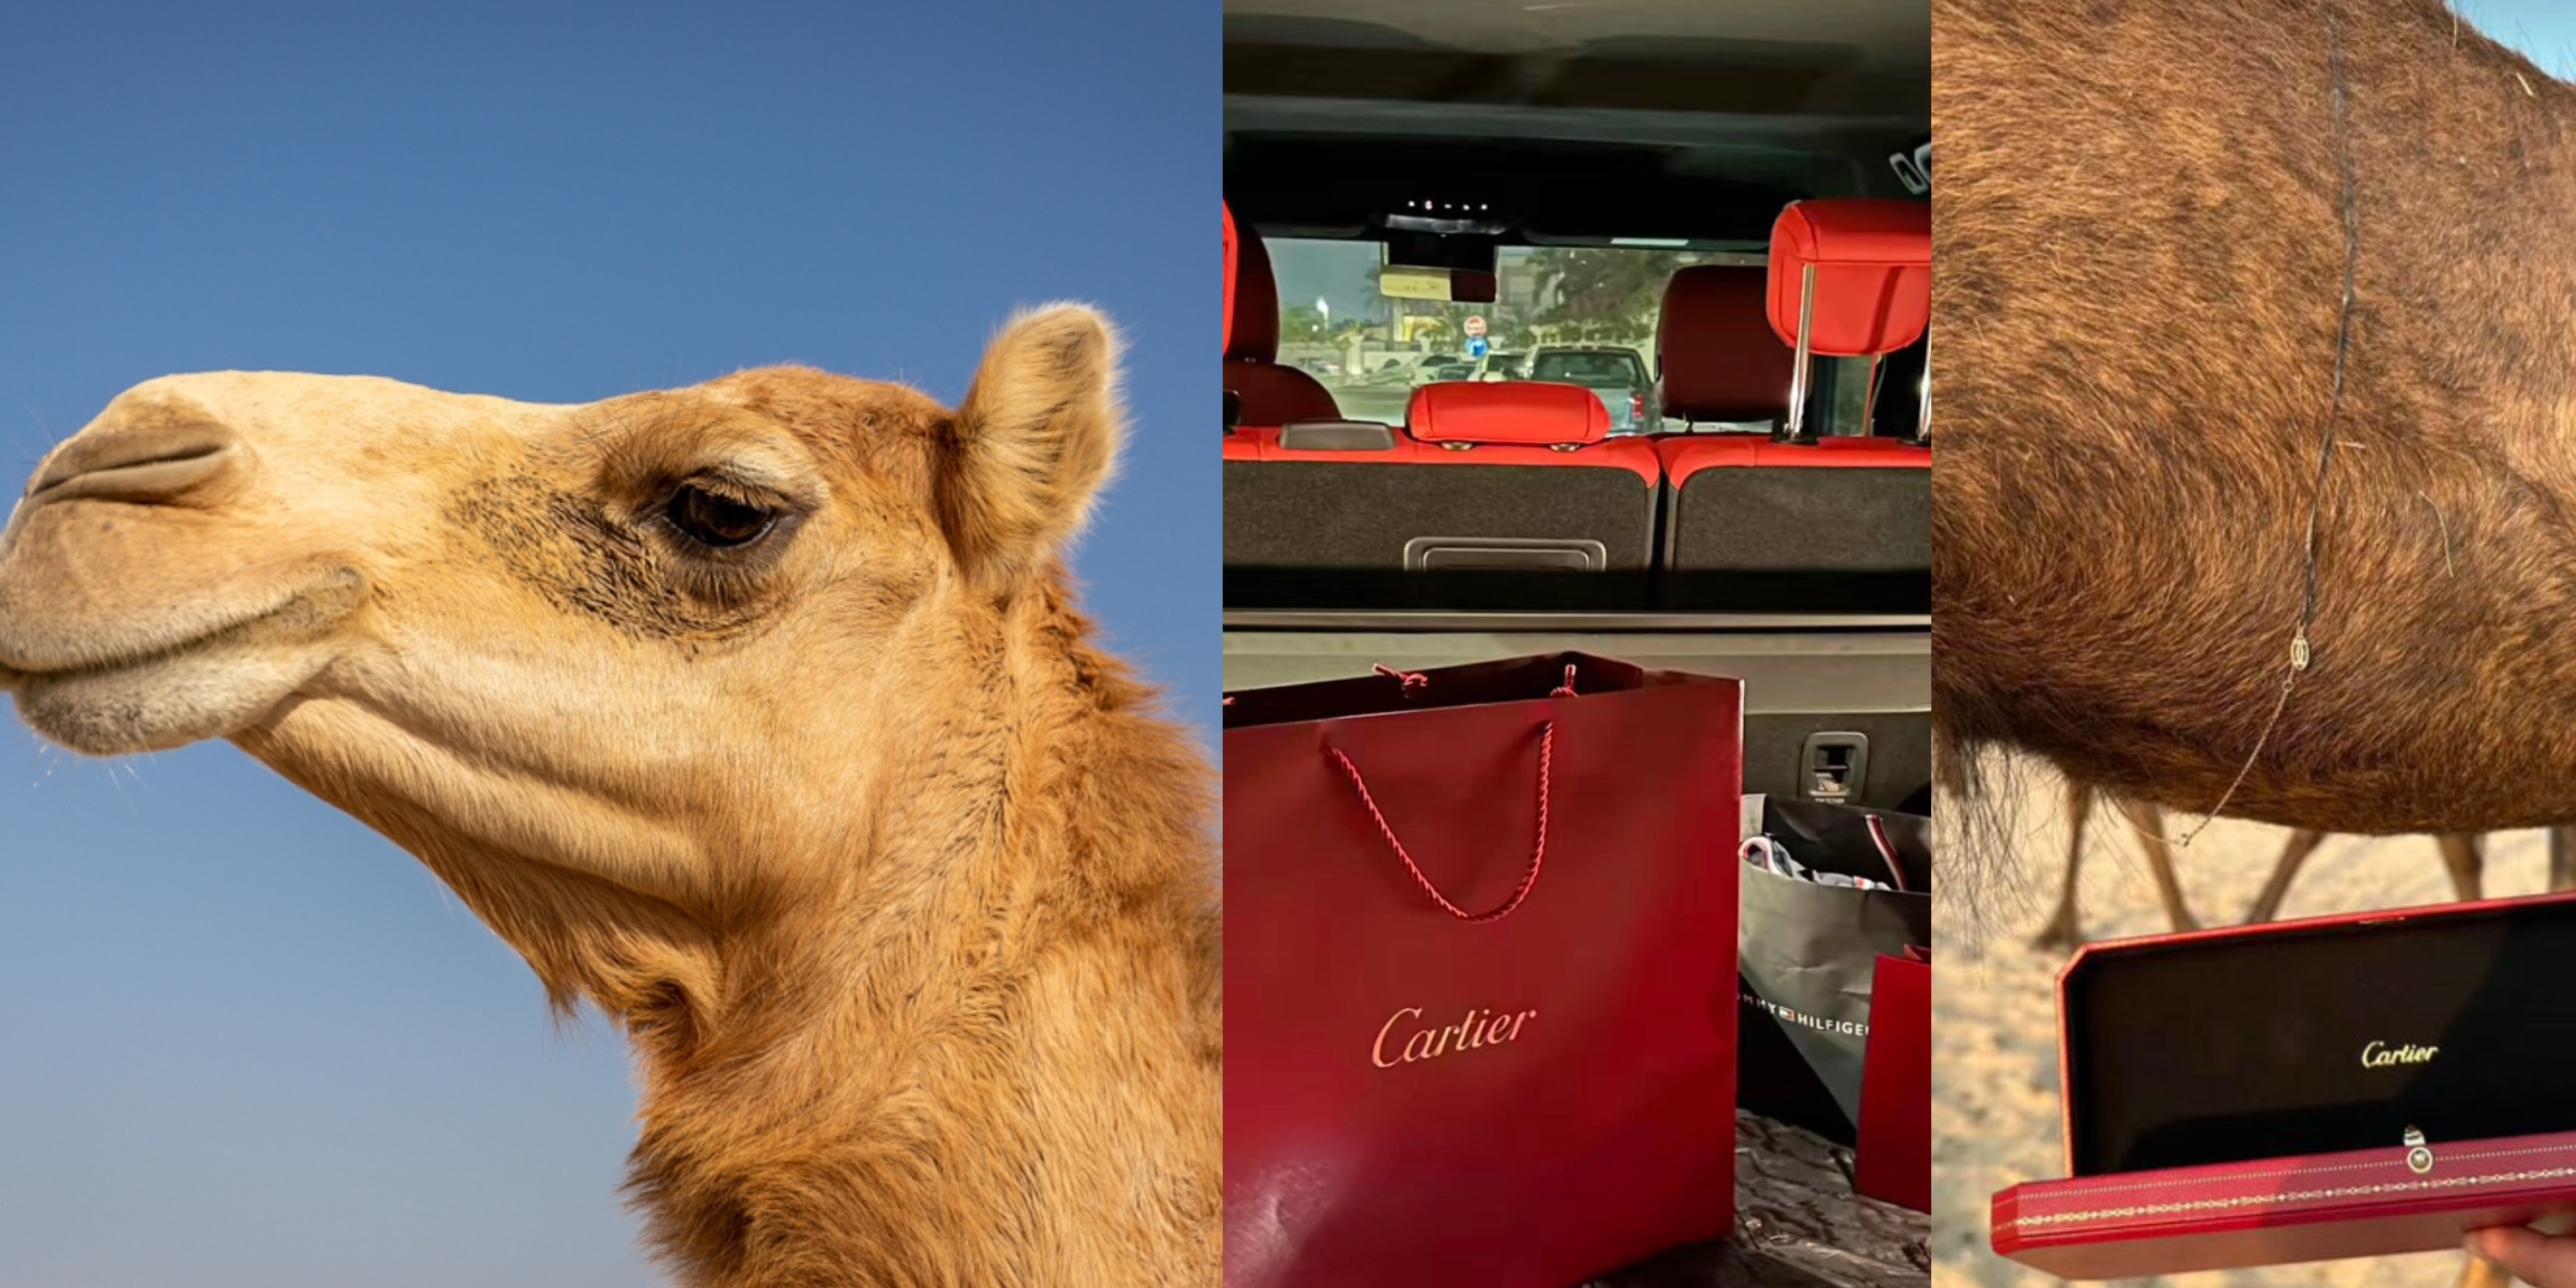 saudi man gifts cartier necklace to his camel(photos)